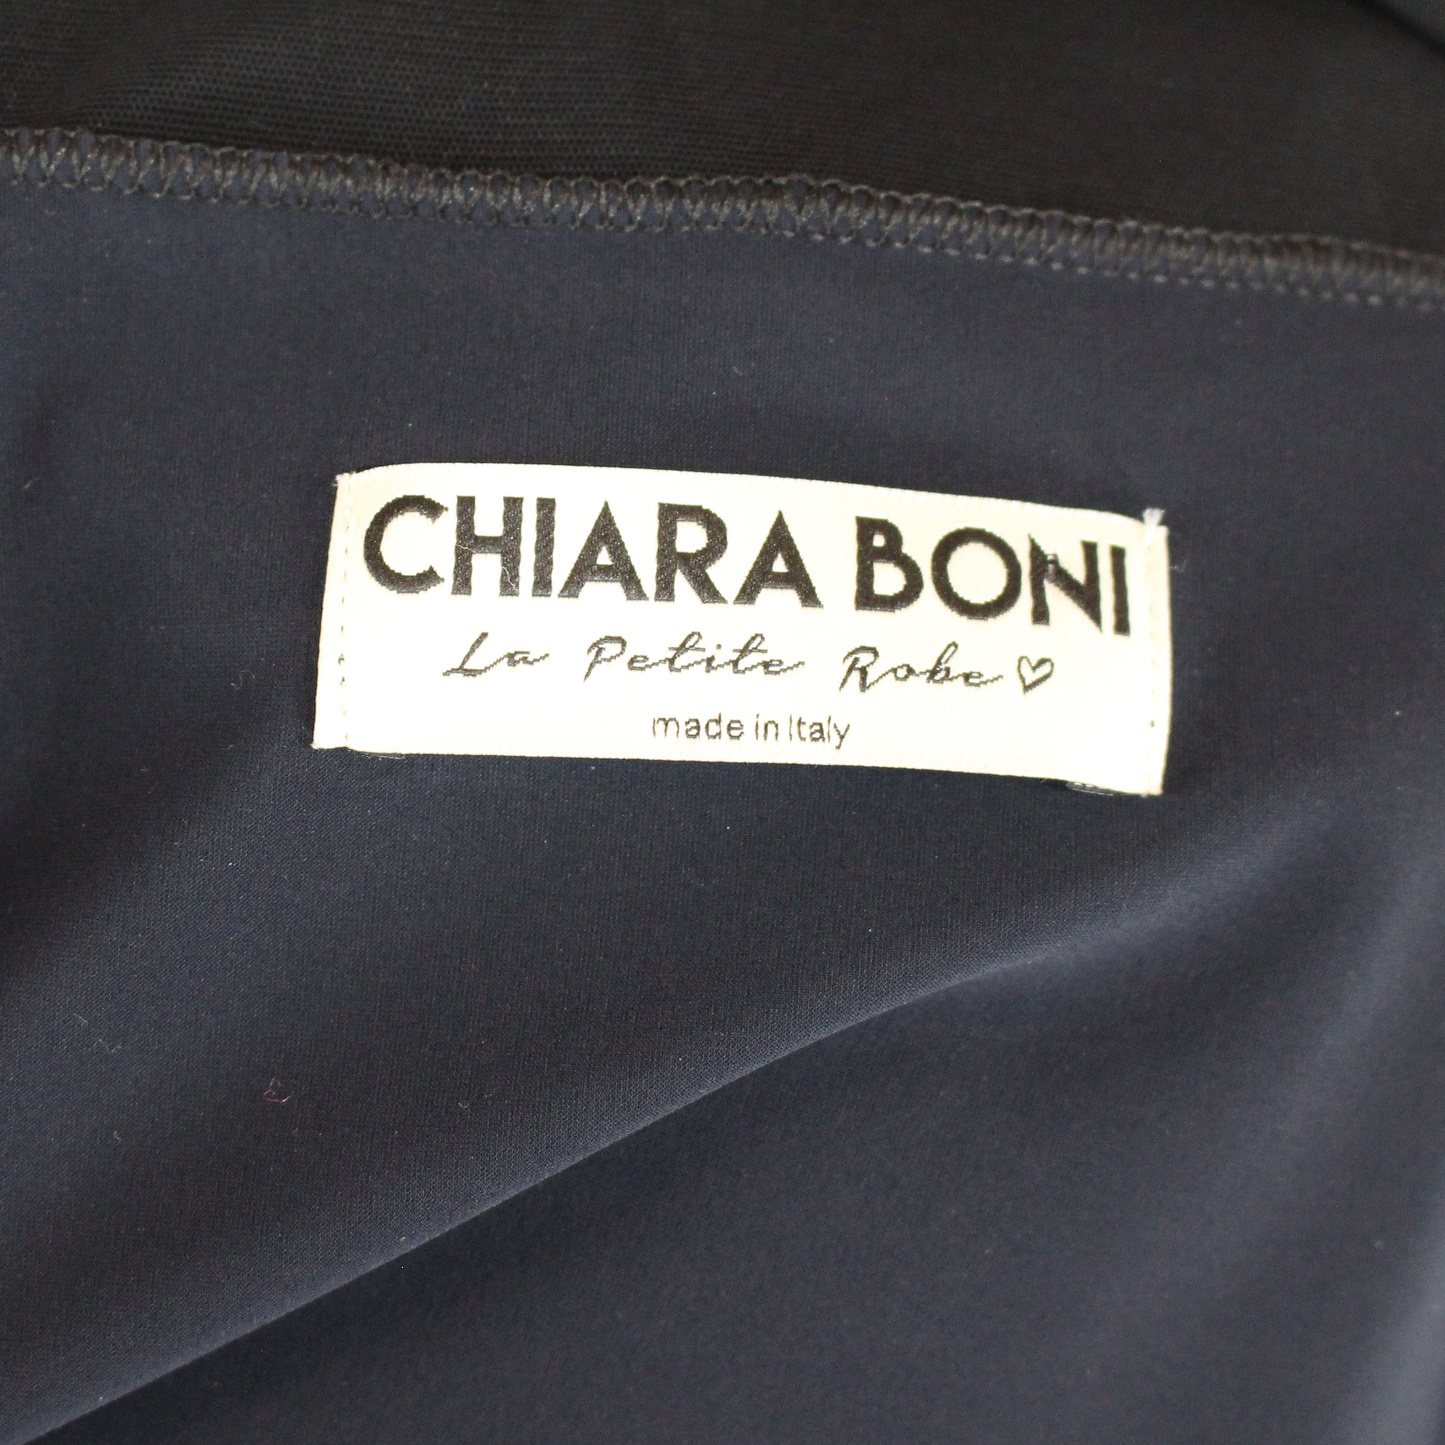 Chiara Boni Jailin Sheath Dress